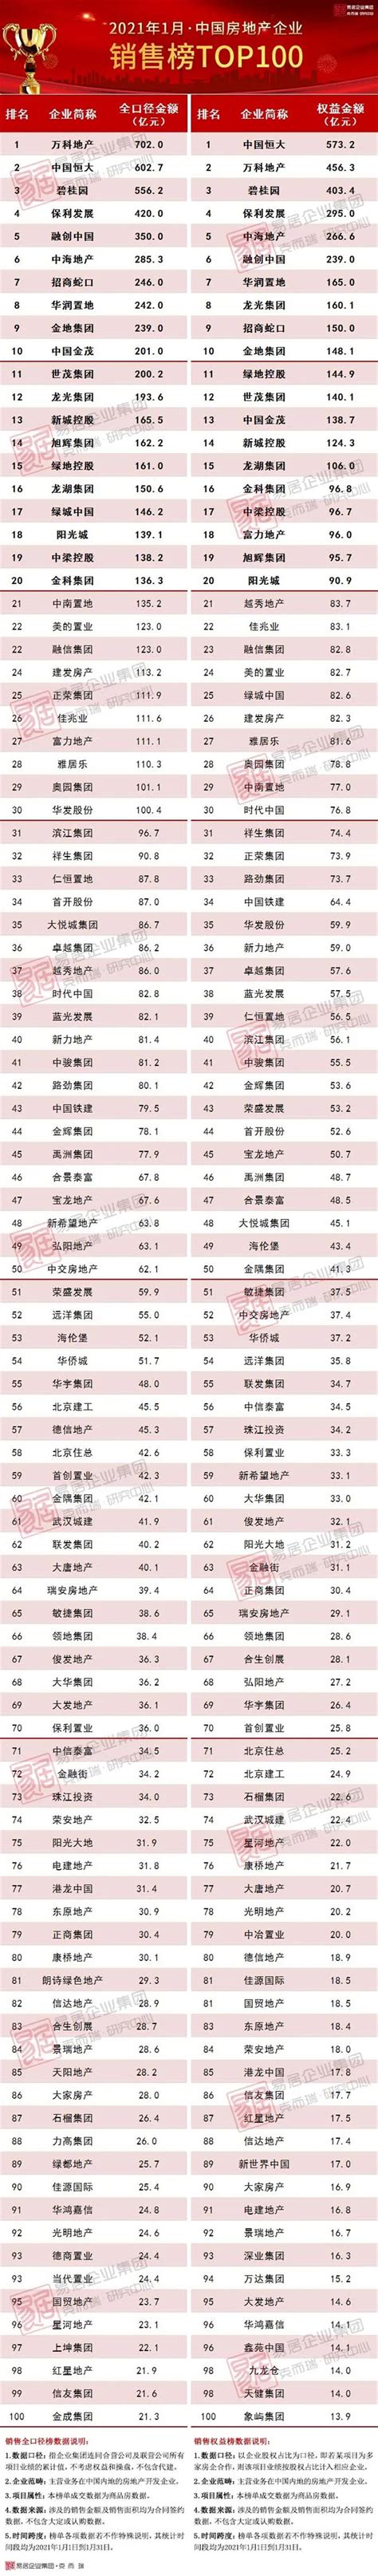 2021年1月中国房地产企业销售TOP100排行榜_迈点网